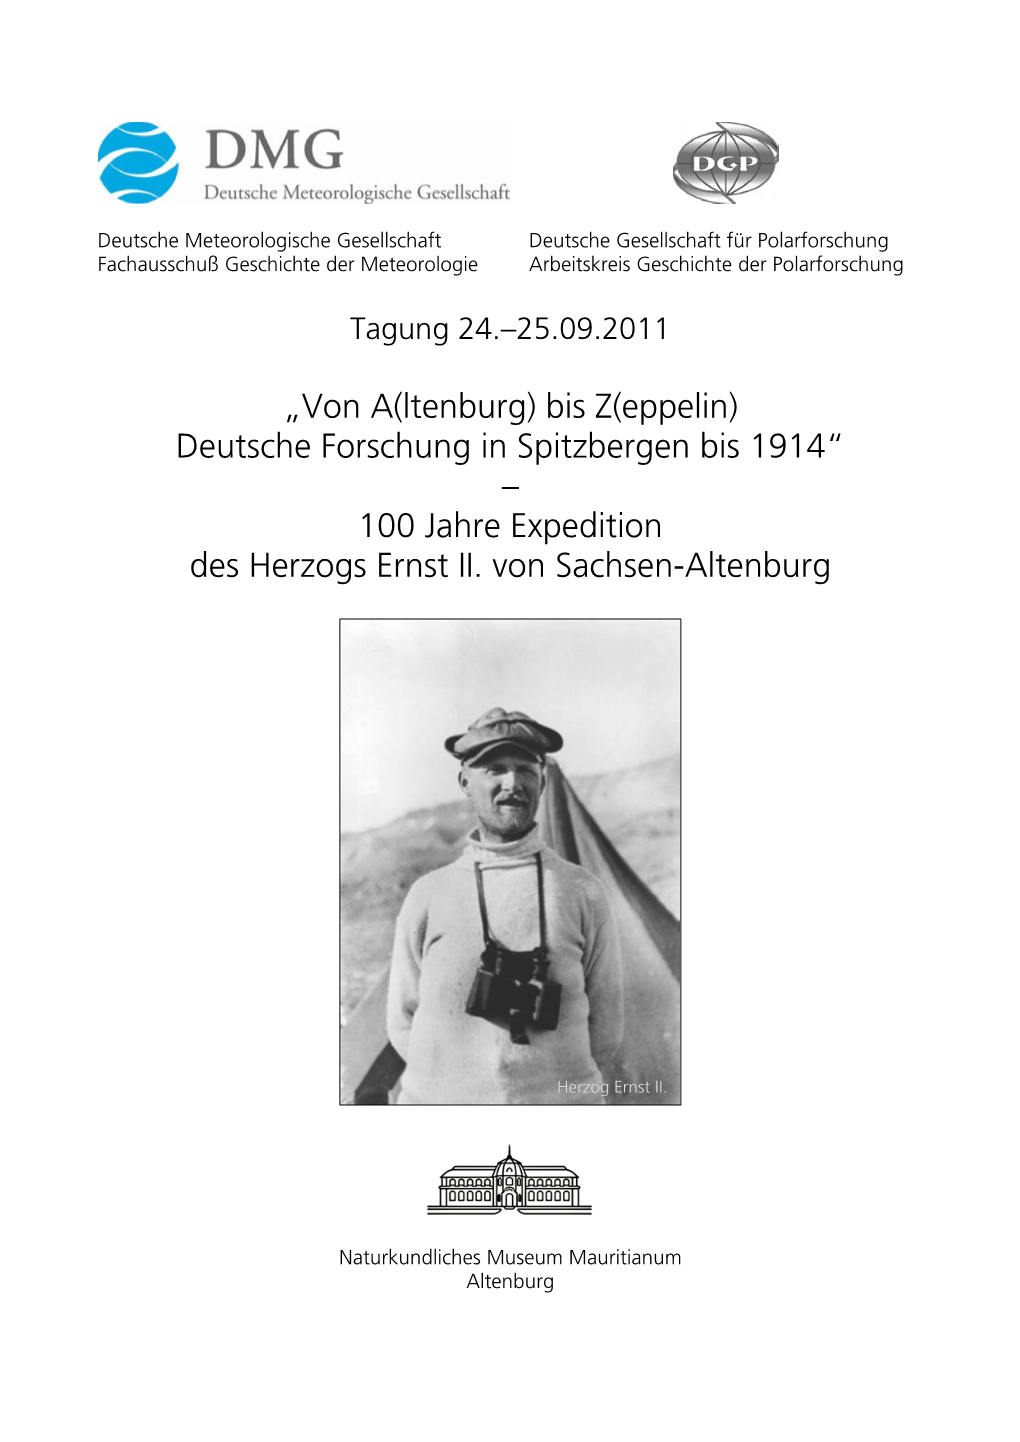 100 Jahre Expedition Des Herzogs Ernst II. Von Sachsen-Altenburg